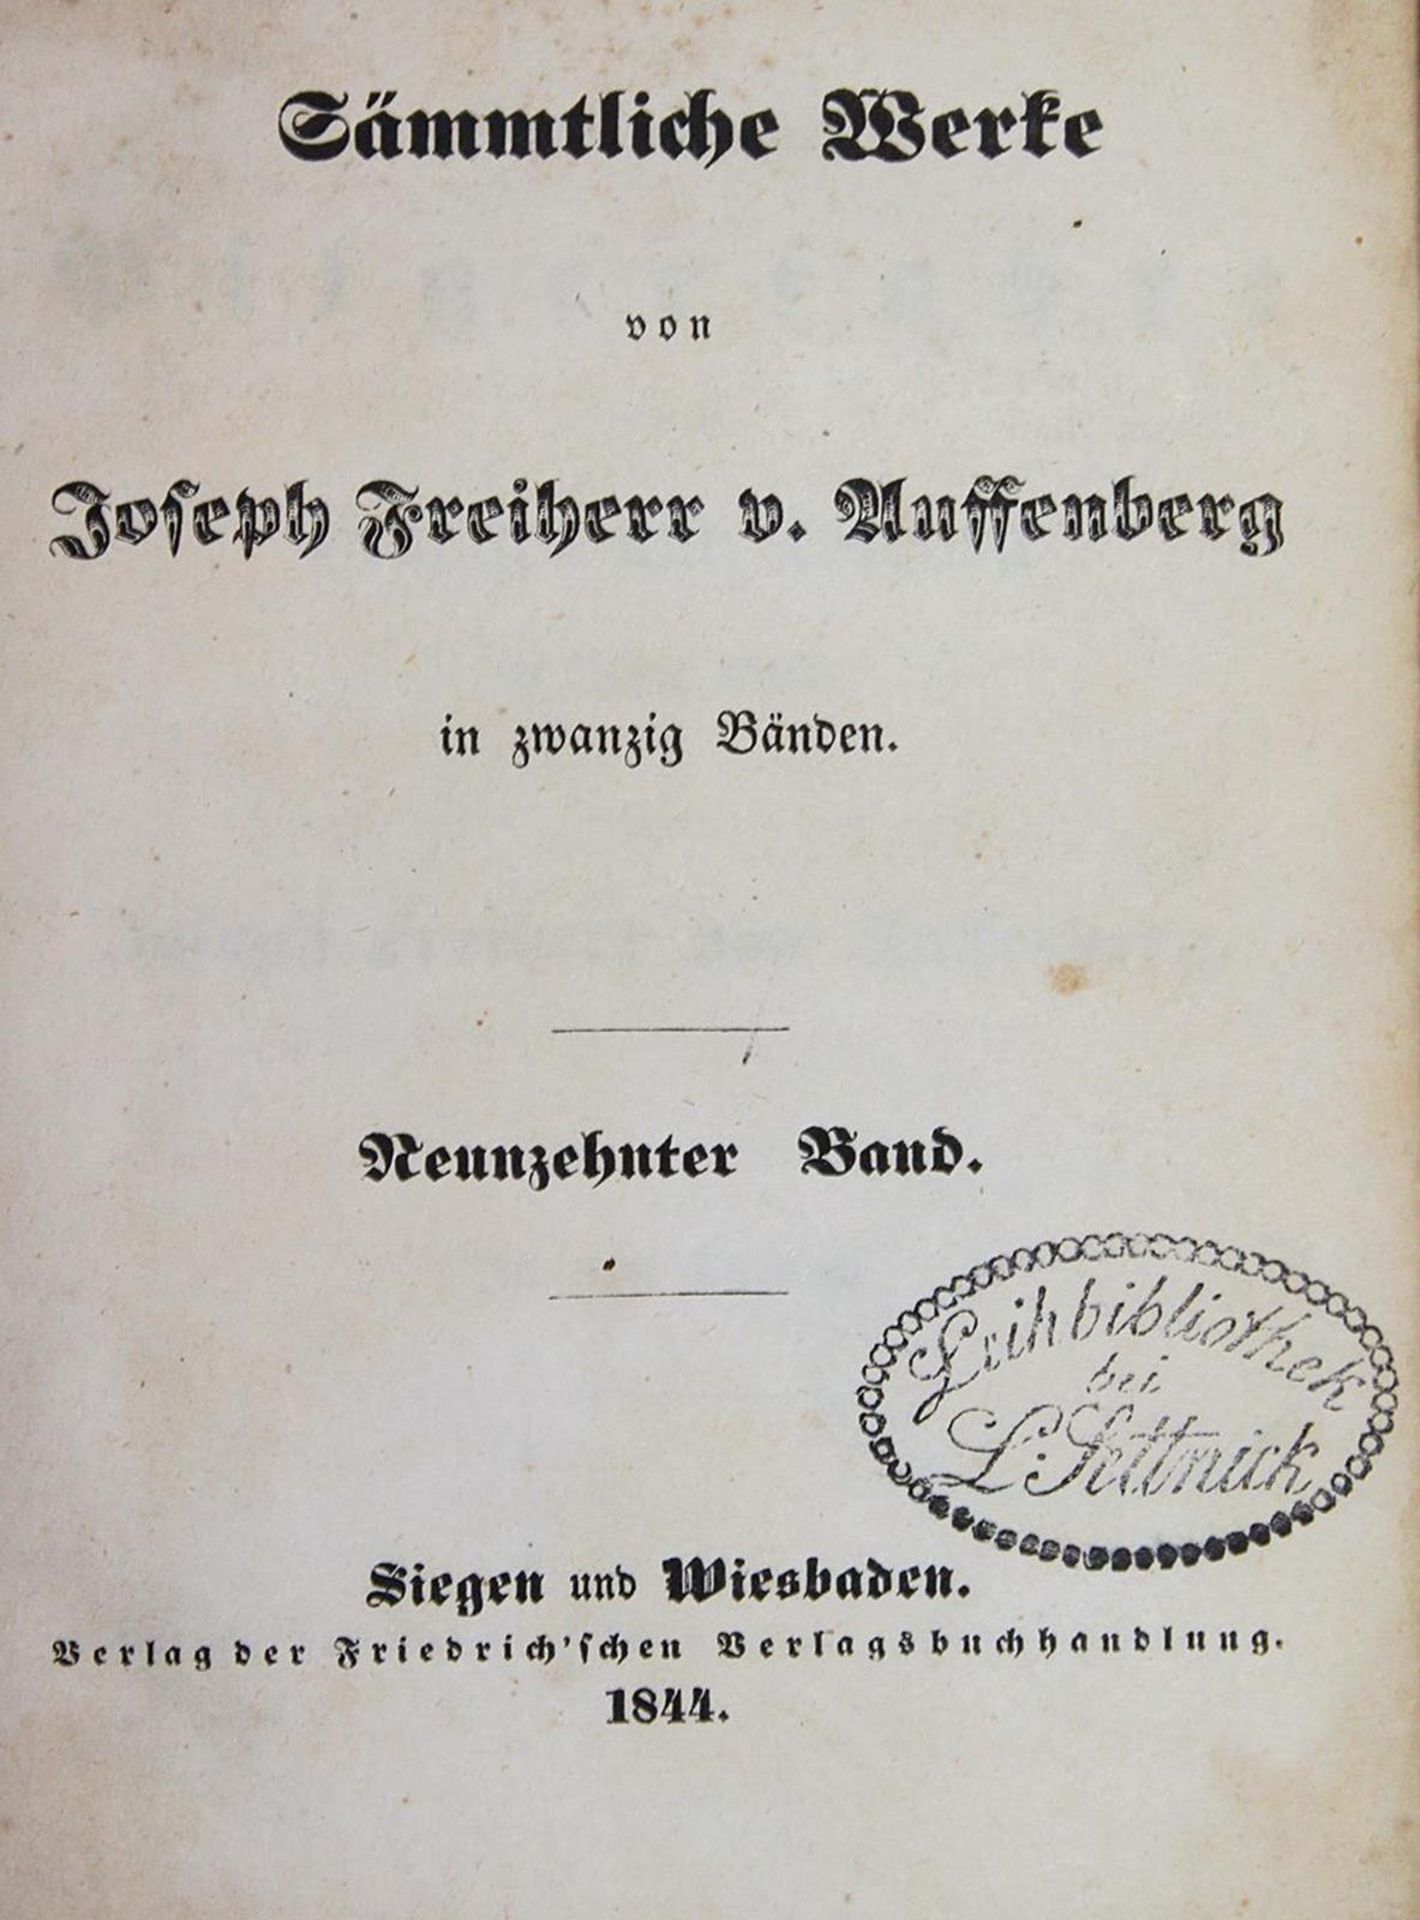 Auffenberg,J.v.Sämmtliche Werke. 20 Bde. u. 1 (von 2) Suppl. in 21 Bdn. Siegen u. Wiesbaden, Fr